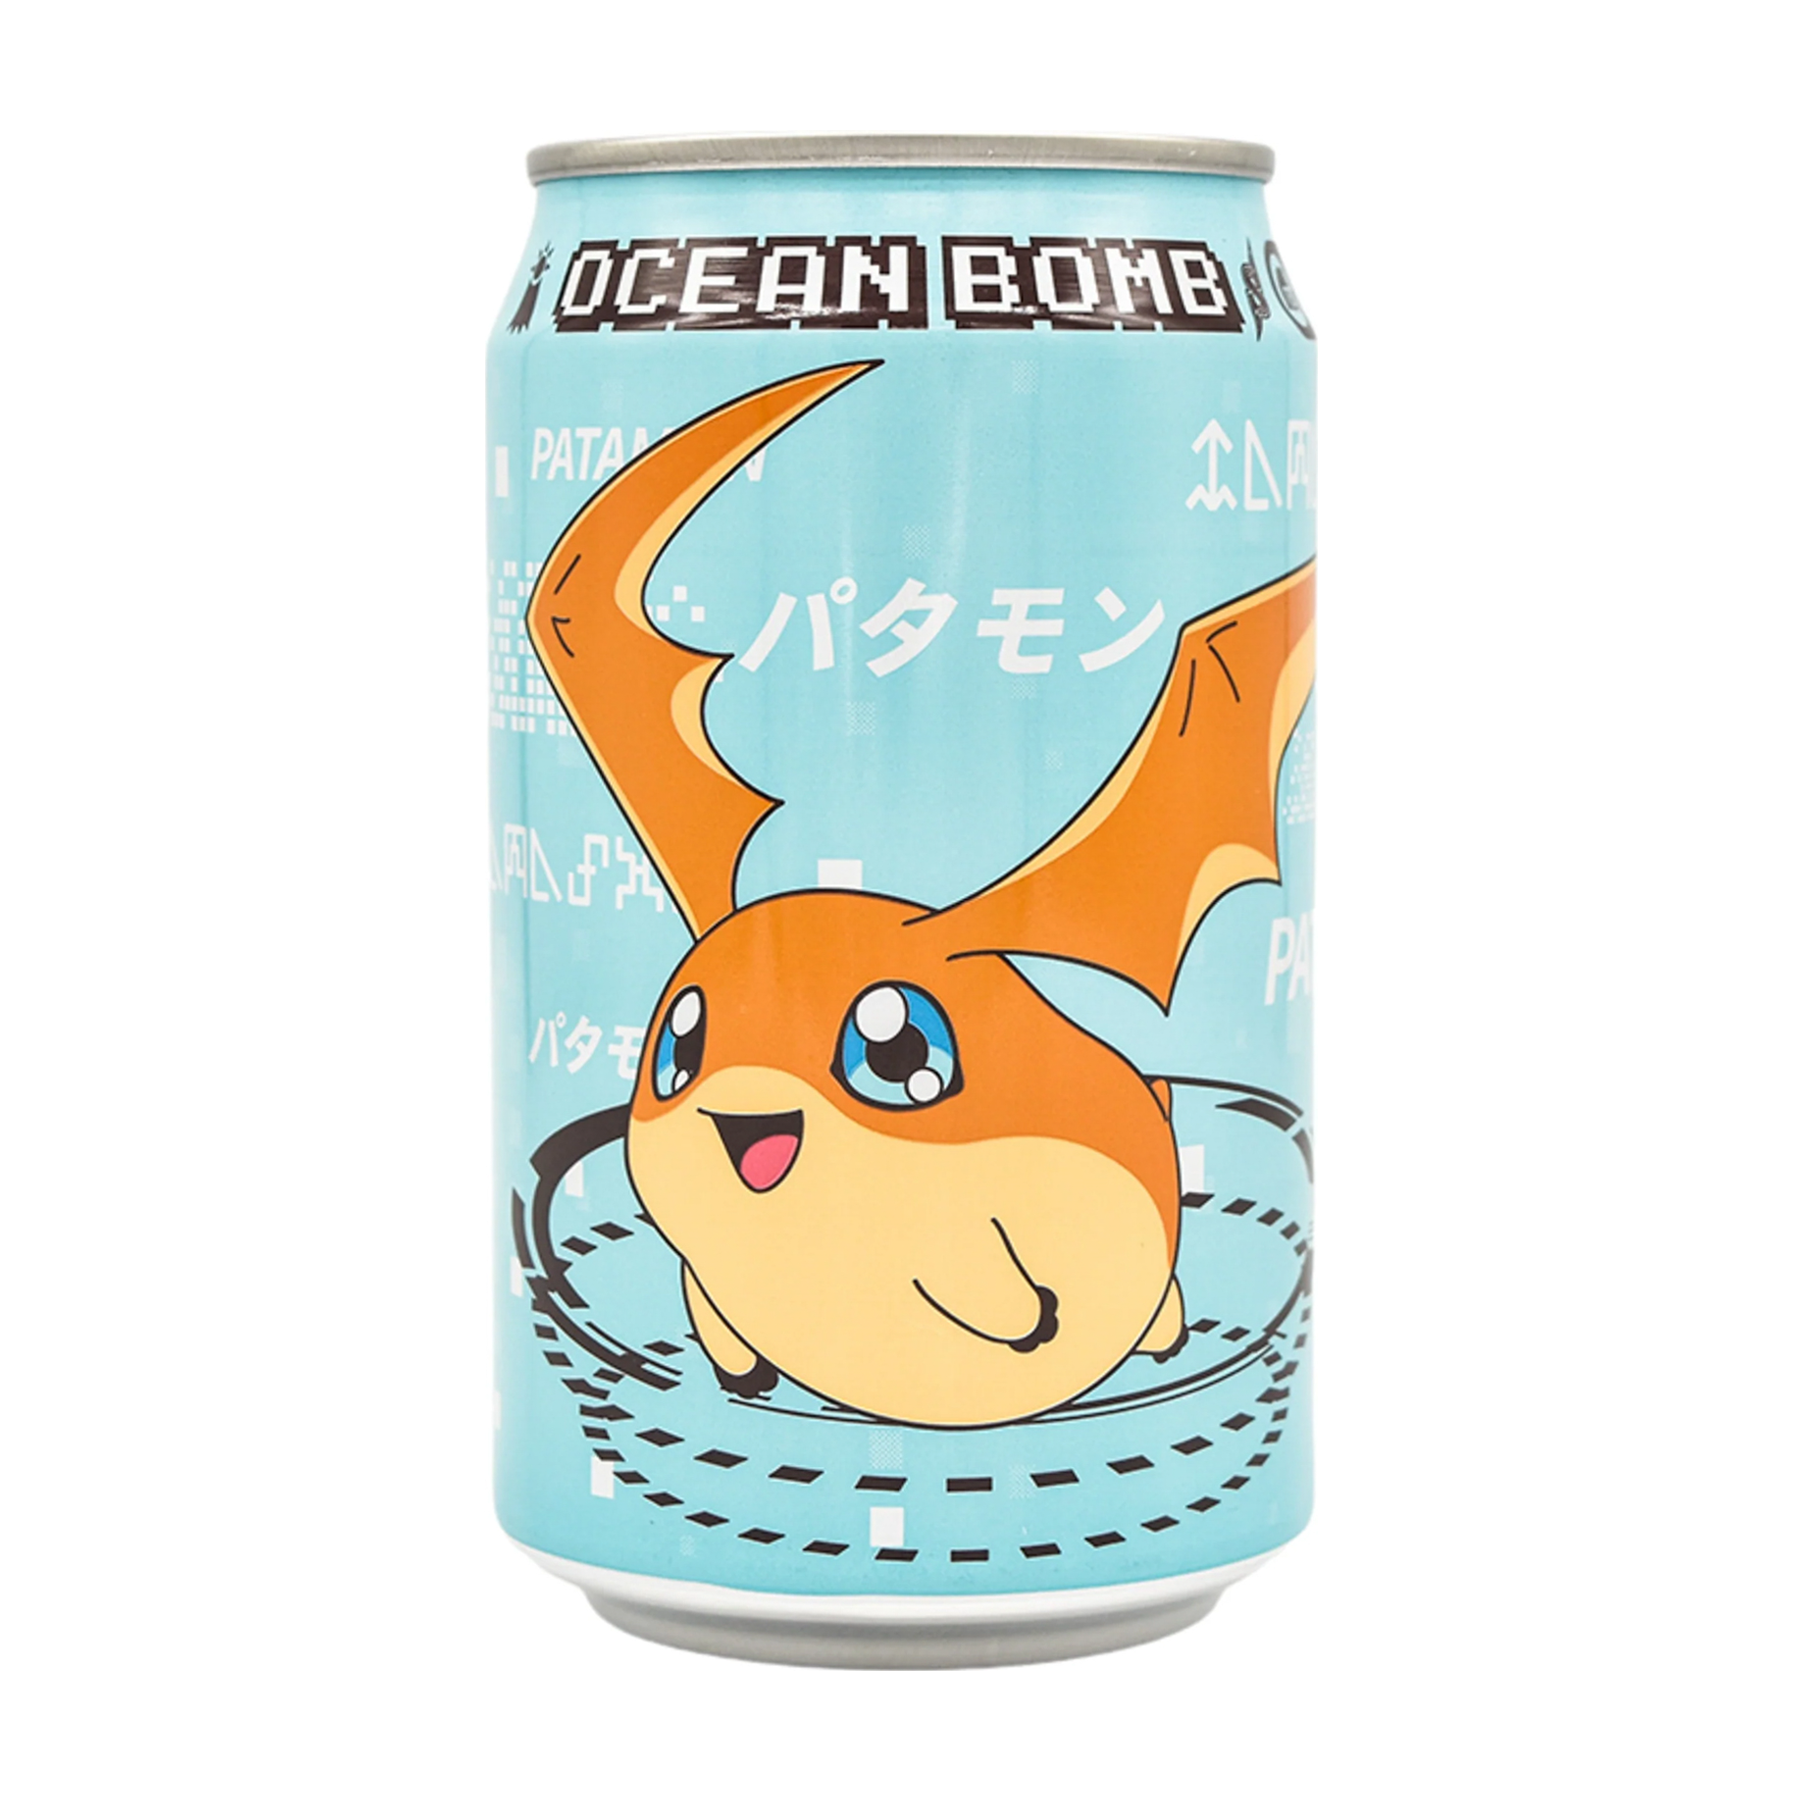 Ocean Bomb Digimon Patamon Lemon Flavored Sparkling Water (330Ml)